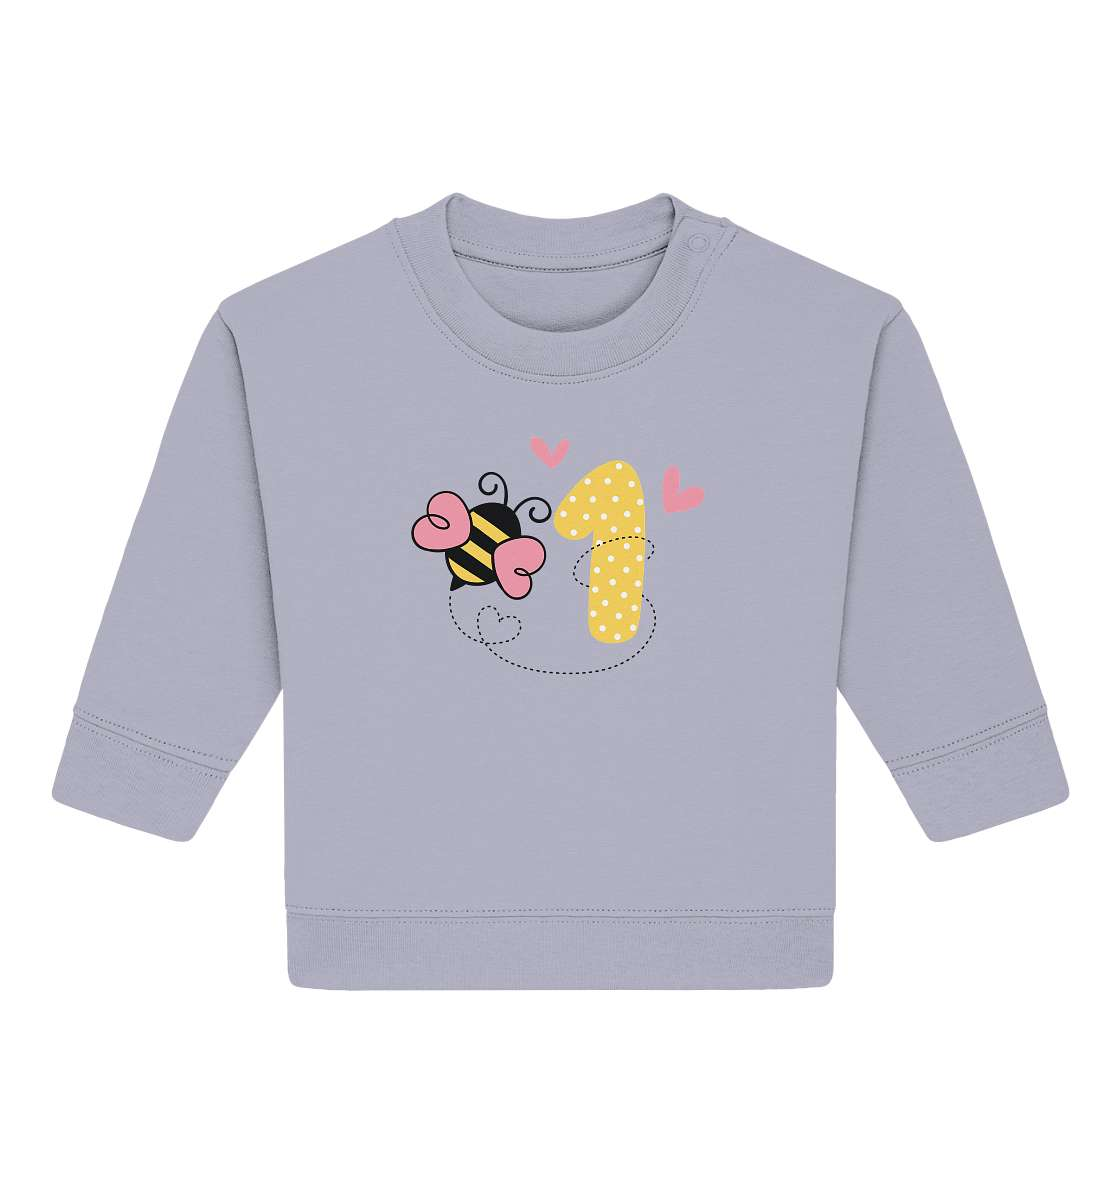 Baby erster Geburtstag - Geburtstags Geschenk - Baby Organic Sweatshirt